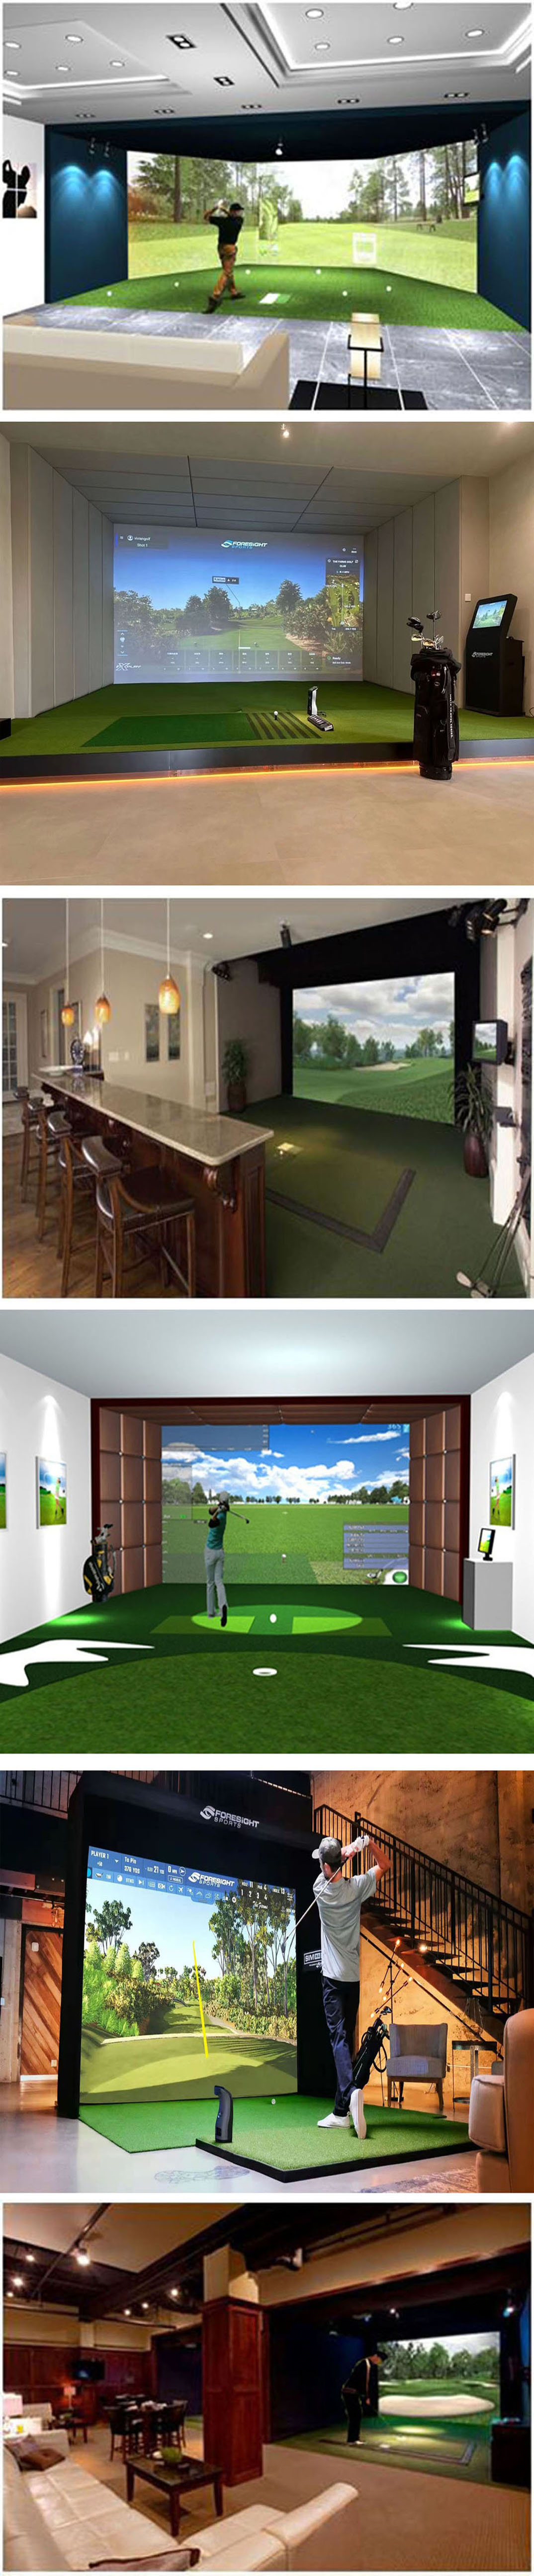 模拟高尔夫练习场案例 二.jpg